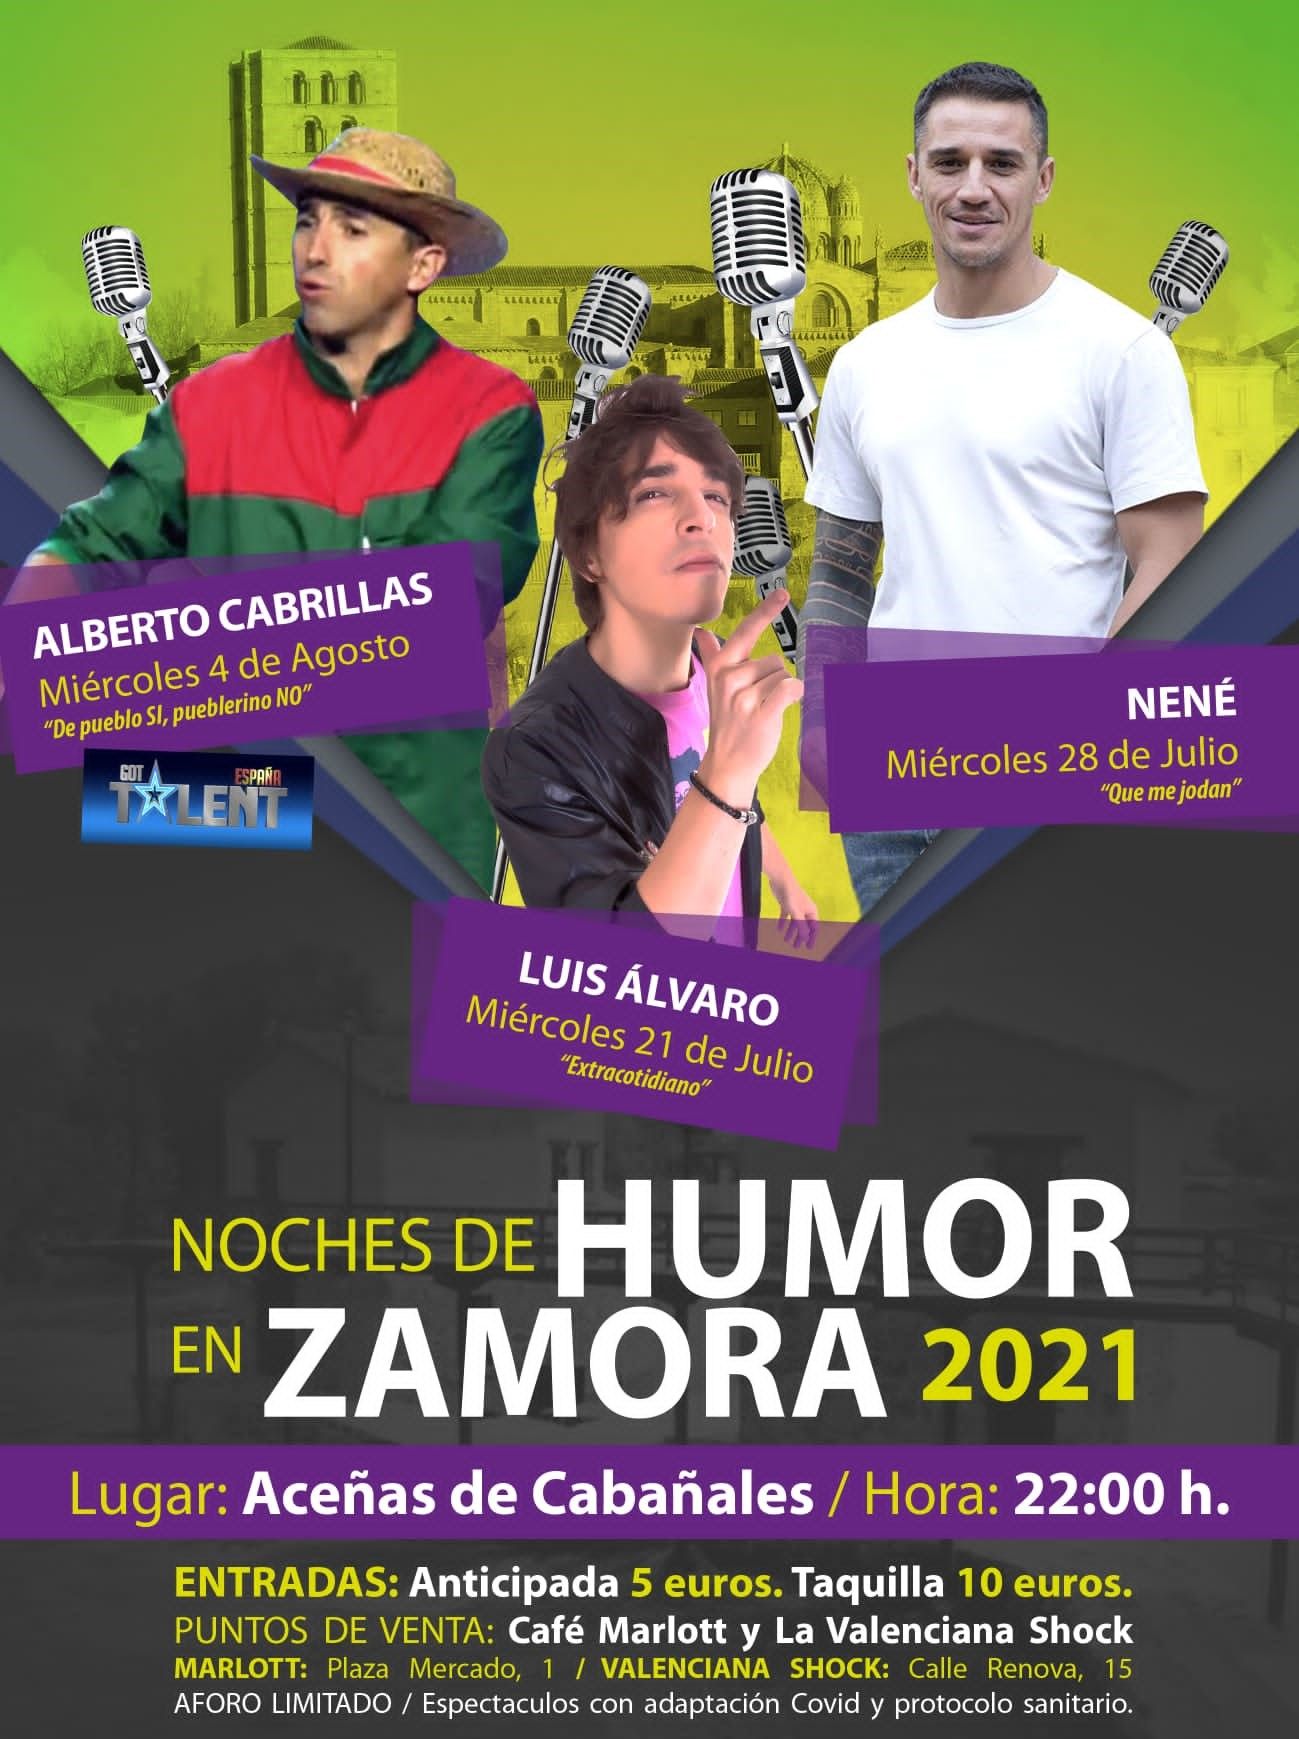 Cartel anunciador de las Noches de Humor en Zamora